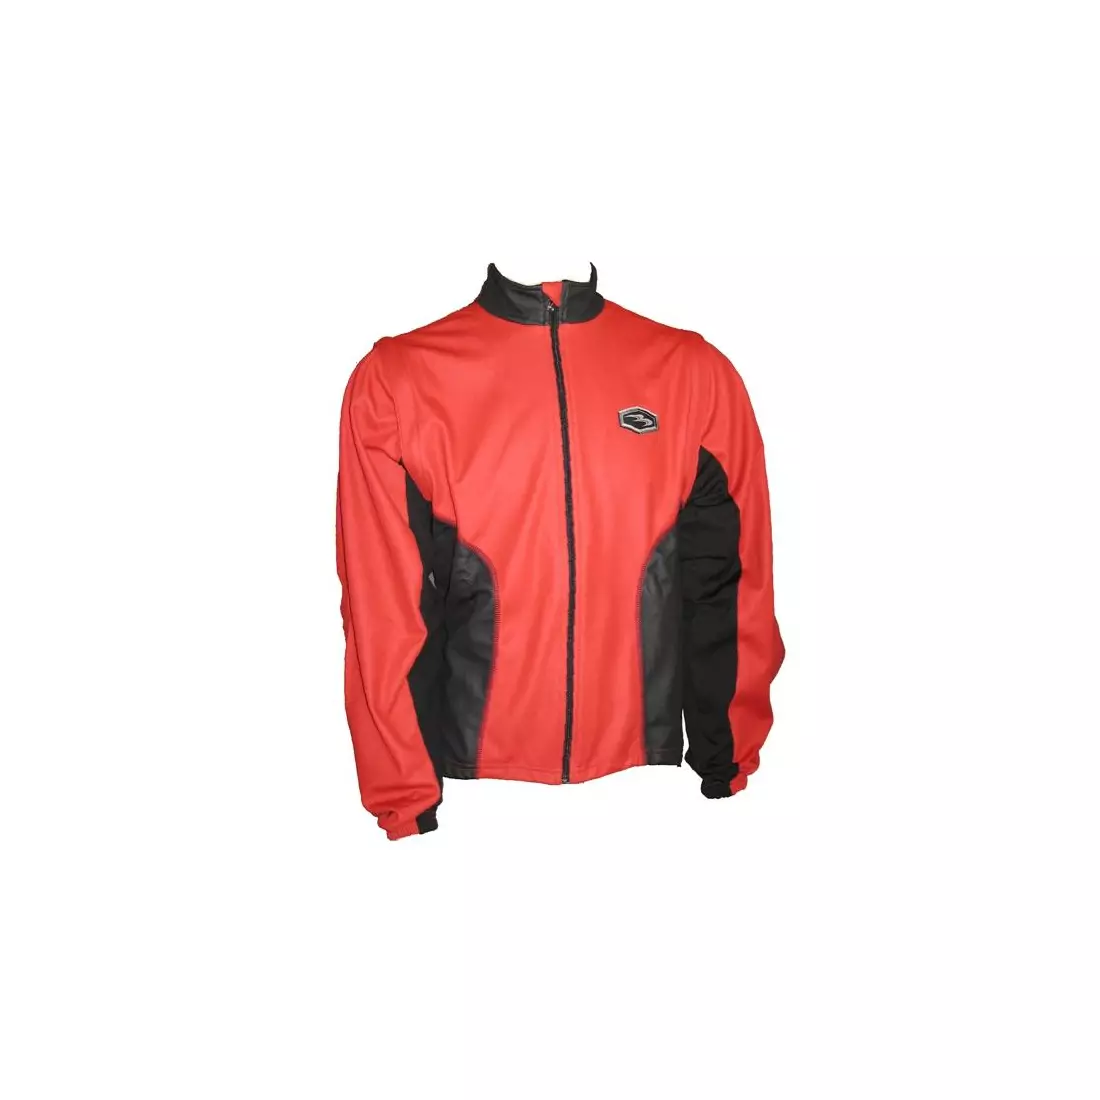 BIEMME SEQUOIA WINDSTOPPER Men's Winter Cycling Jacket, Red